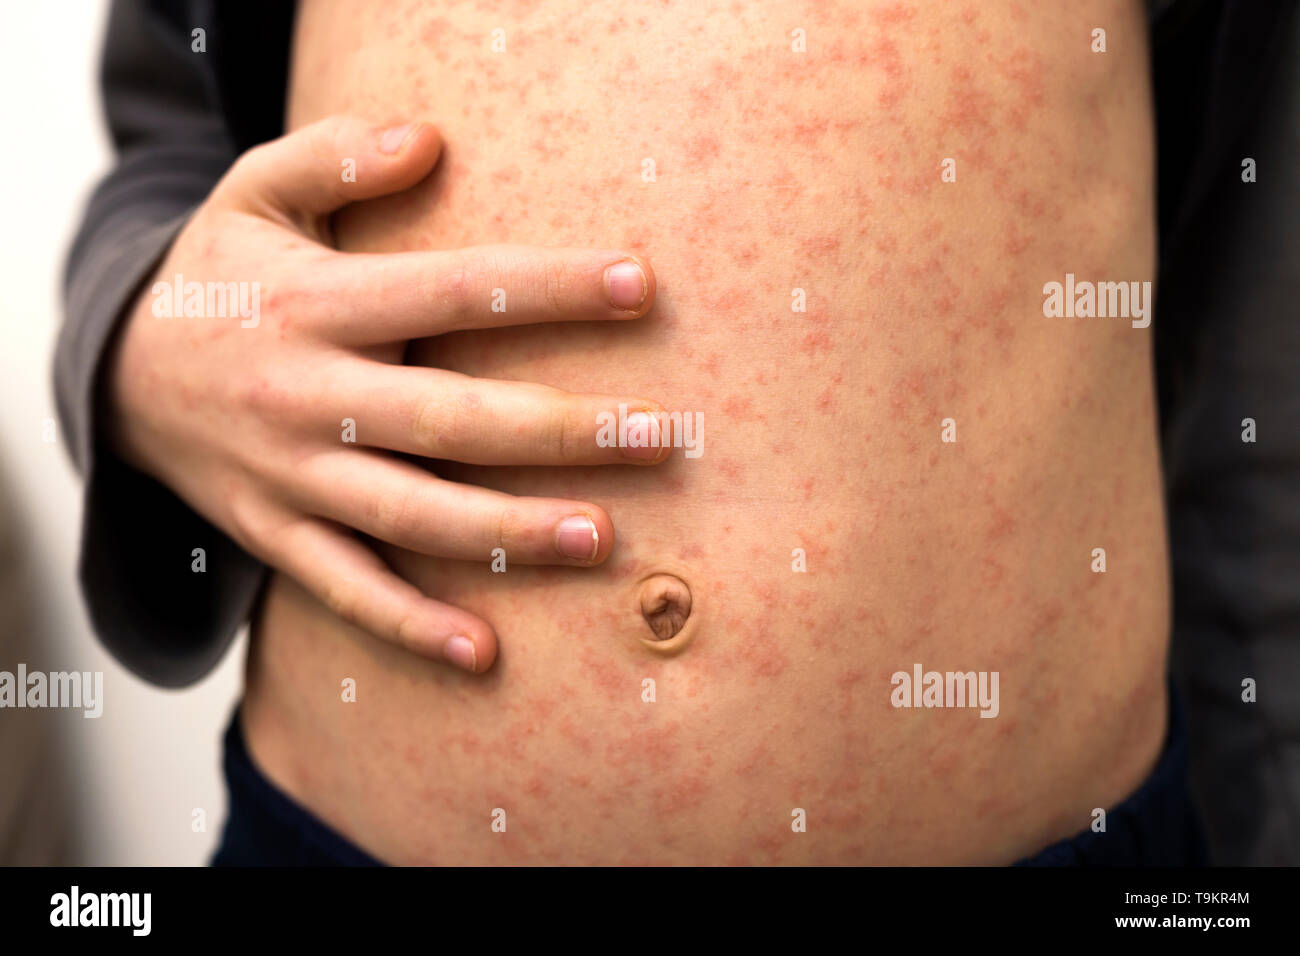 Kranken Kind Körper, Bauch mit roten rush Spots von Masern oder Windpocken. Ansteckend Kind Krankheiten und Behandlung. Stockfoto